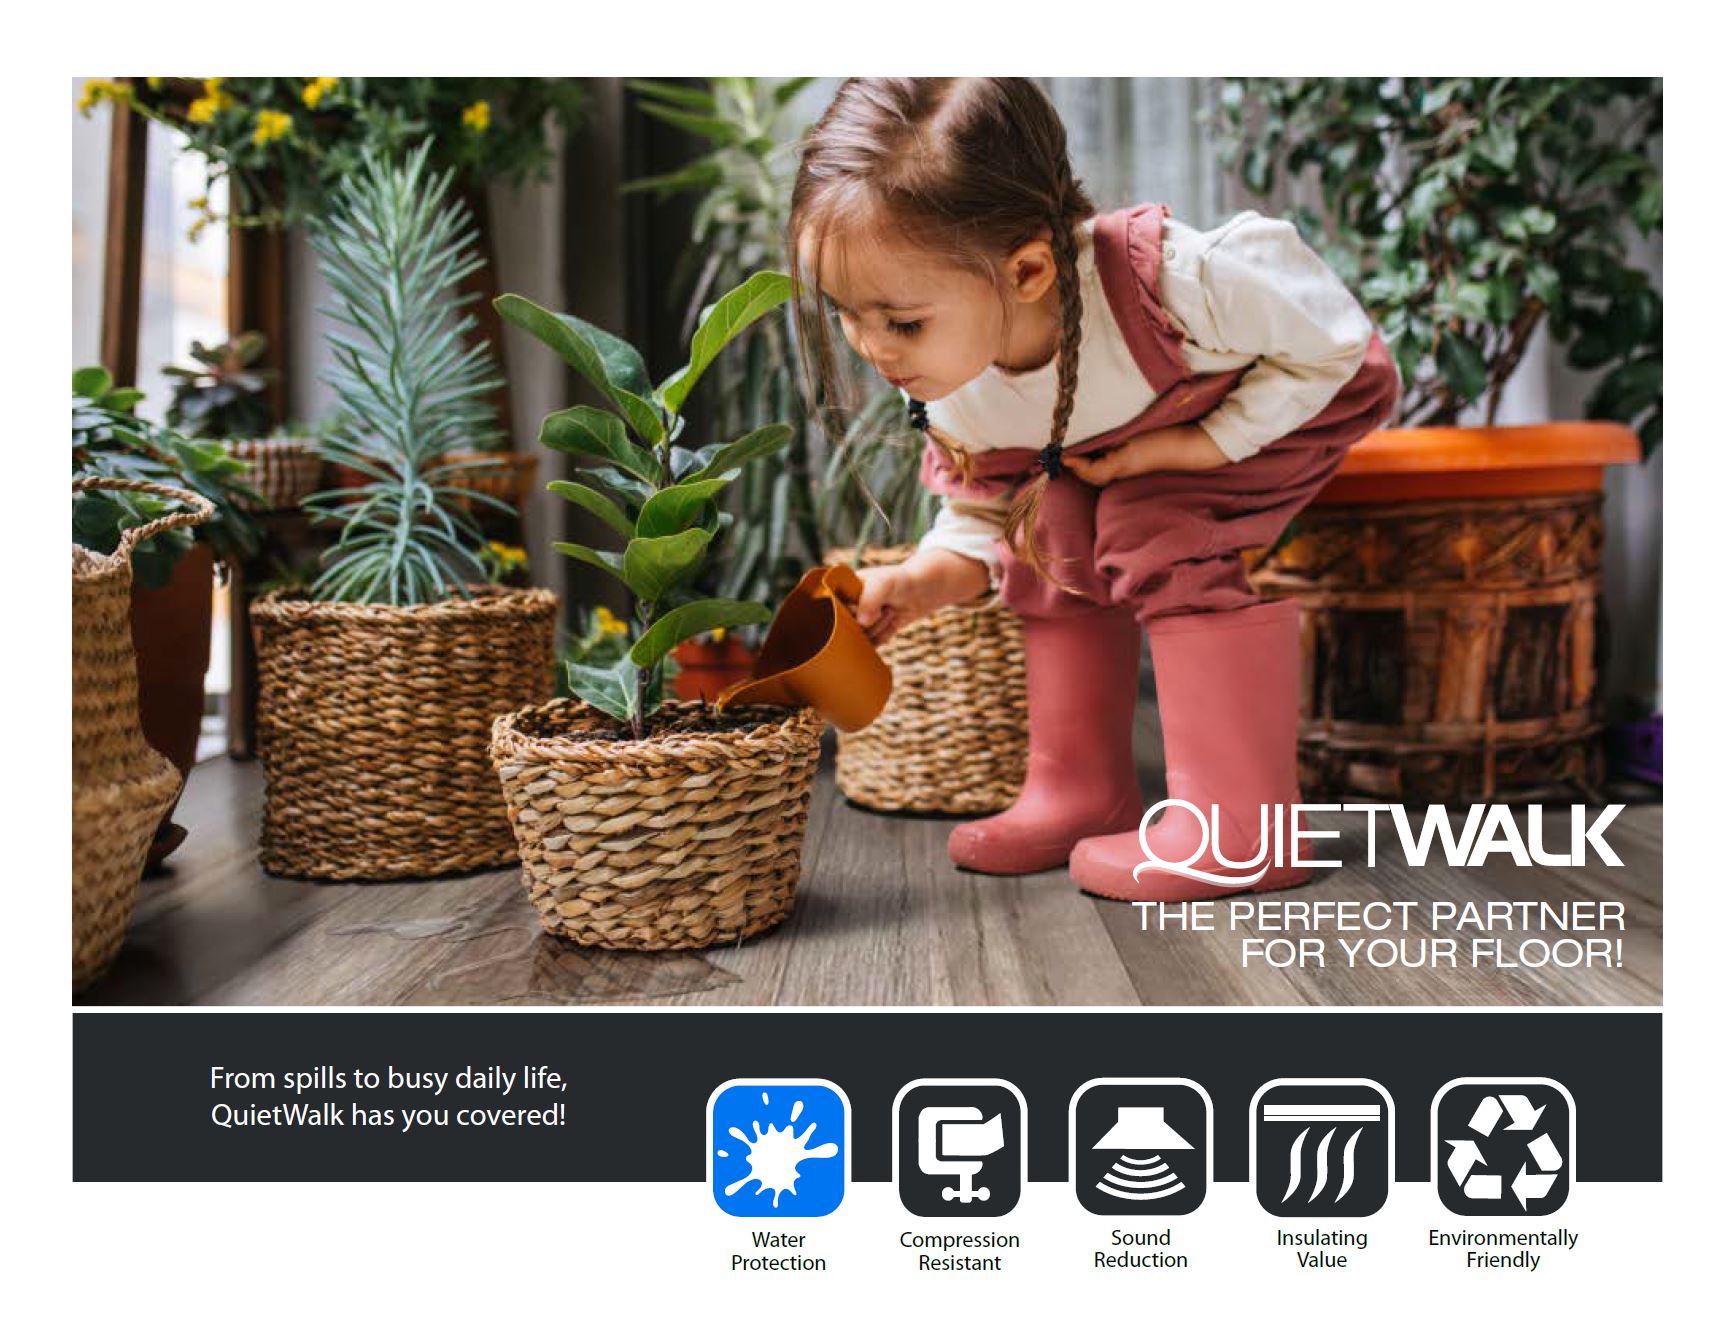 QuietWalk Plus Laminate and Hardwood 33.34-ft x 3-mm Premium Felt